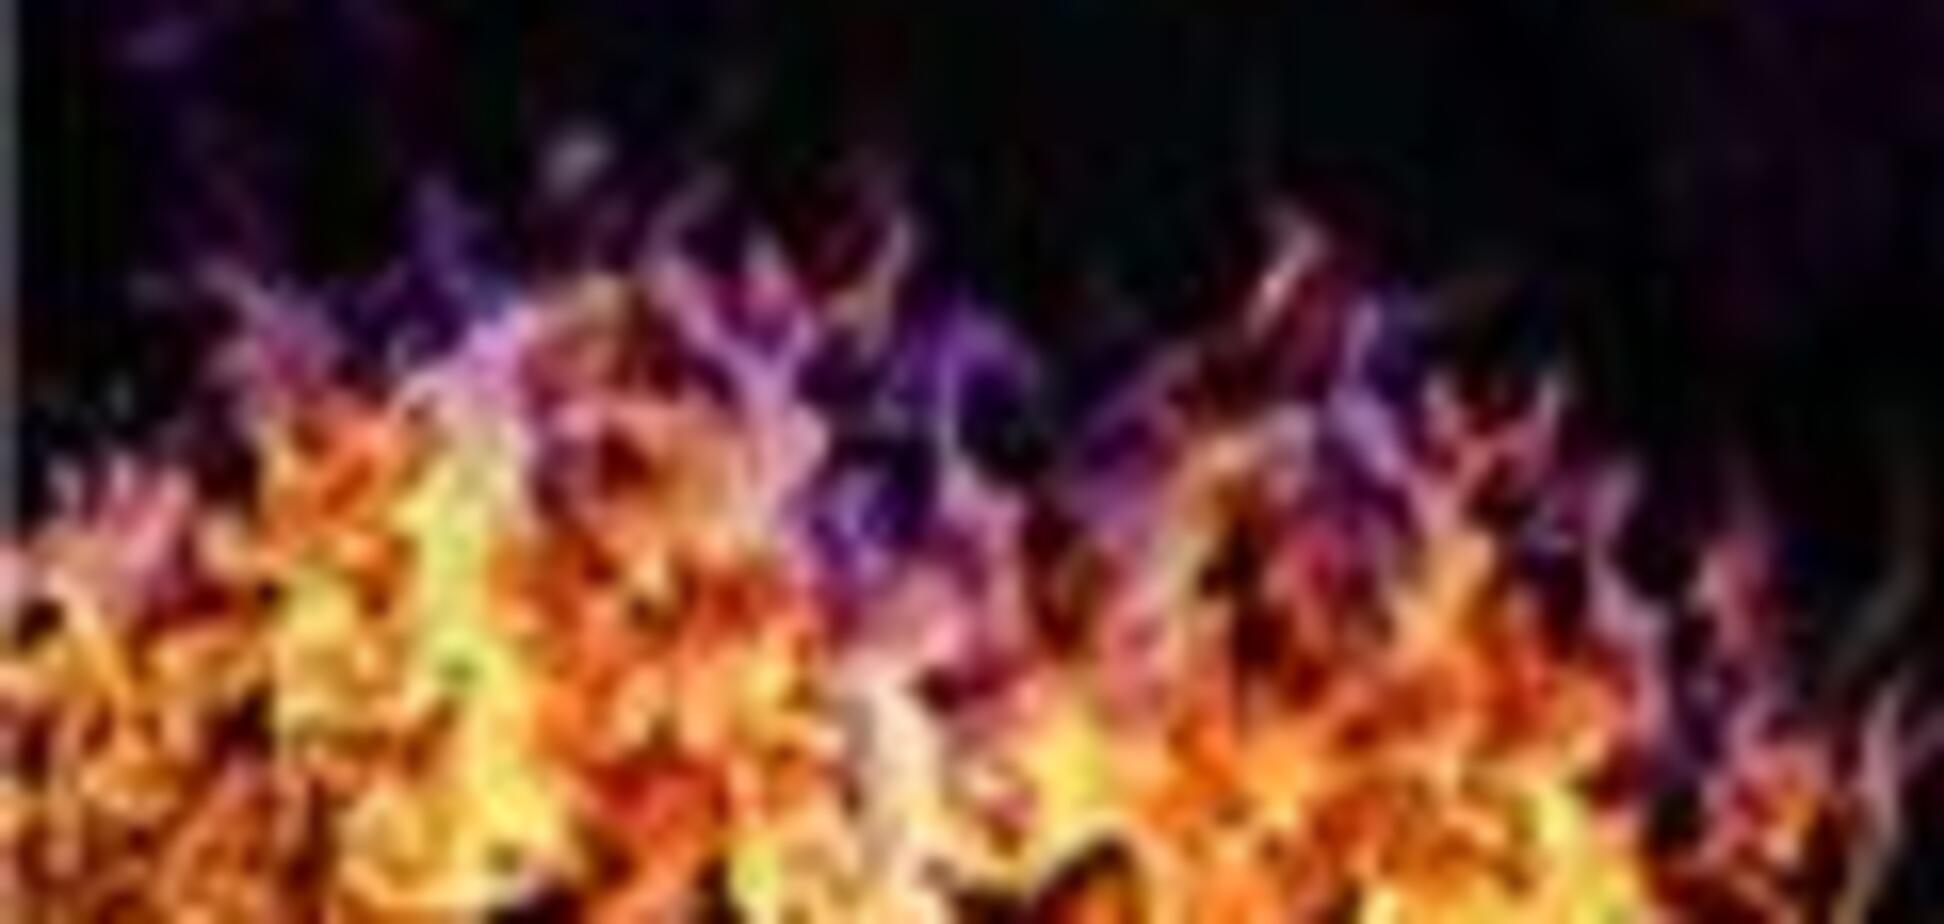 У Херсонській області під час пожежі згоріли двоє дітей